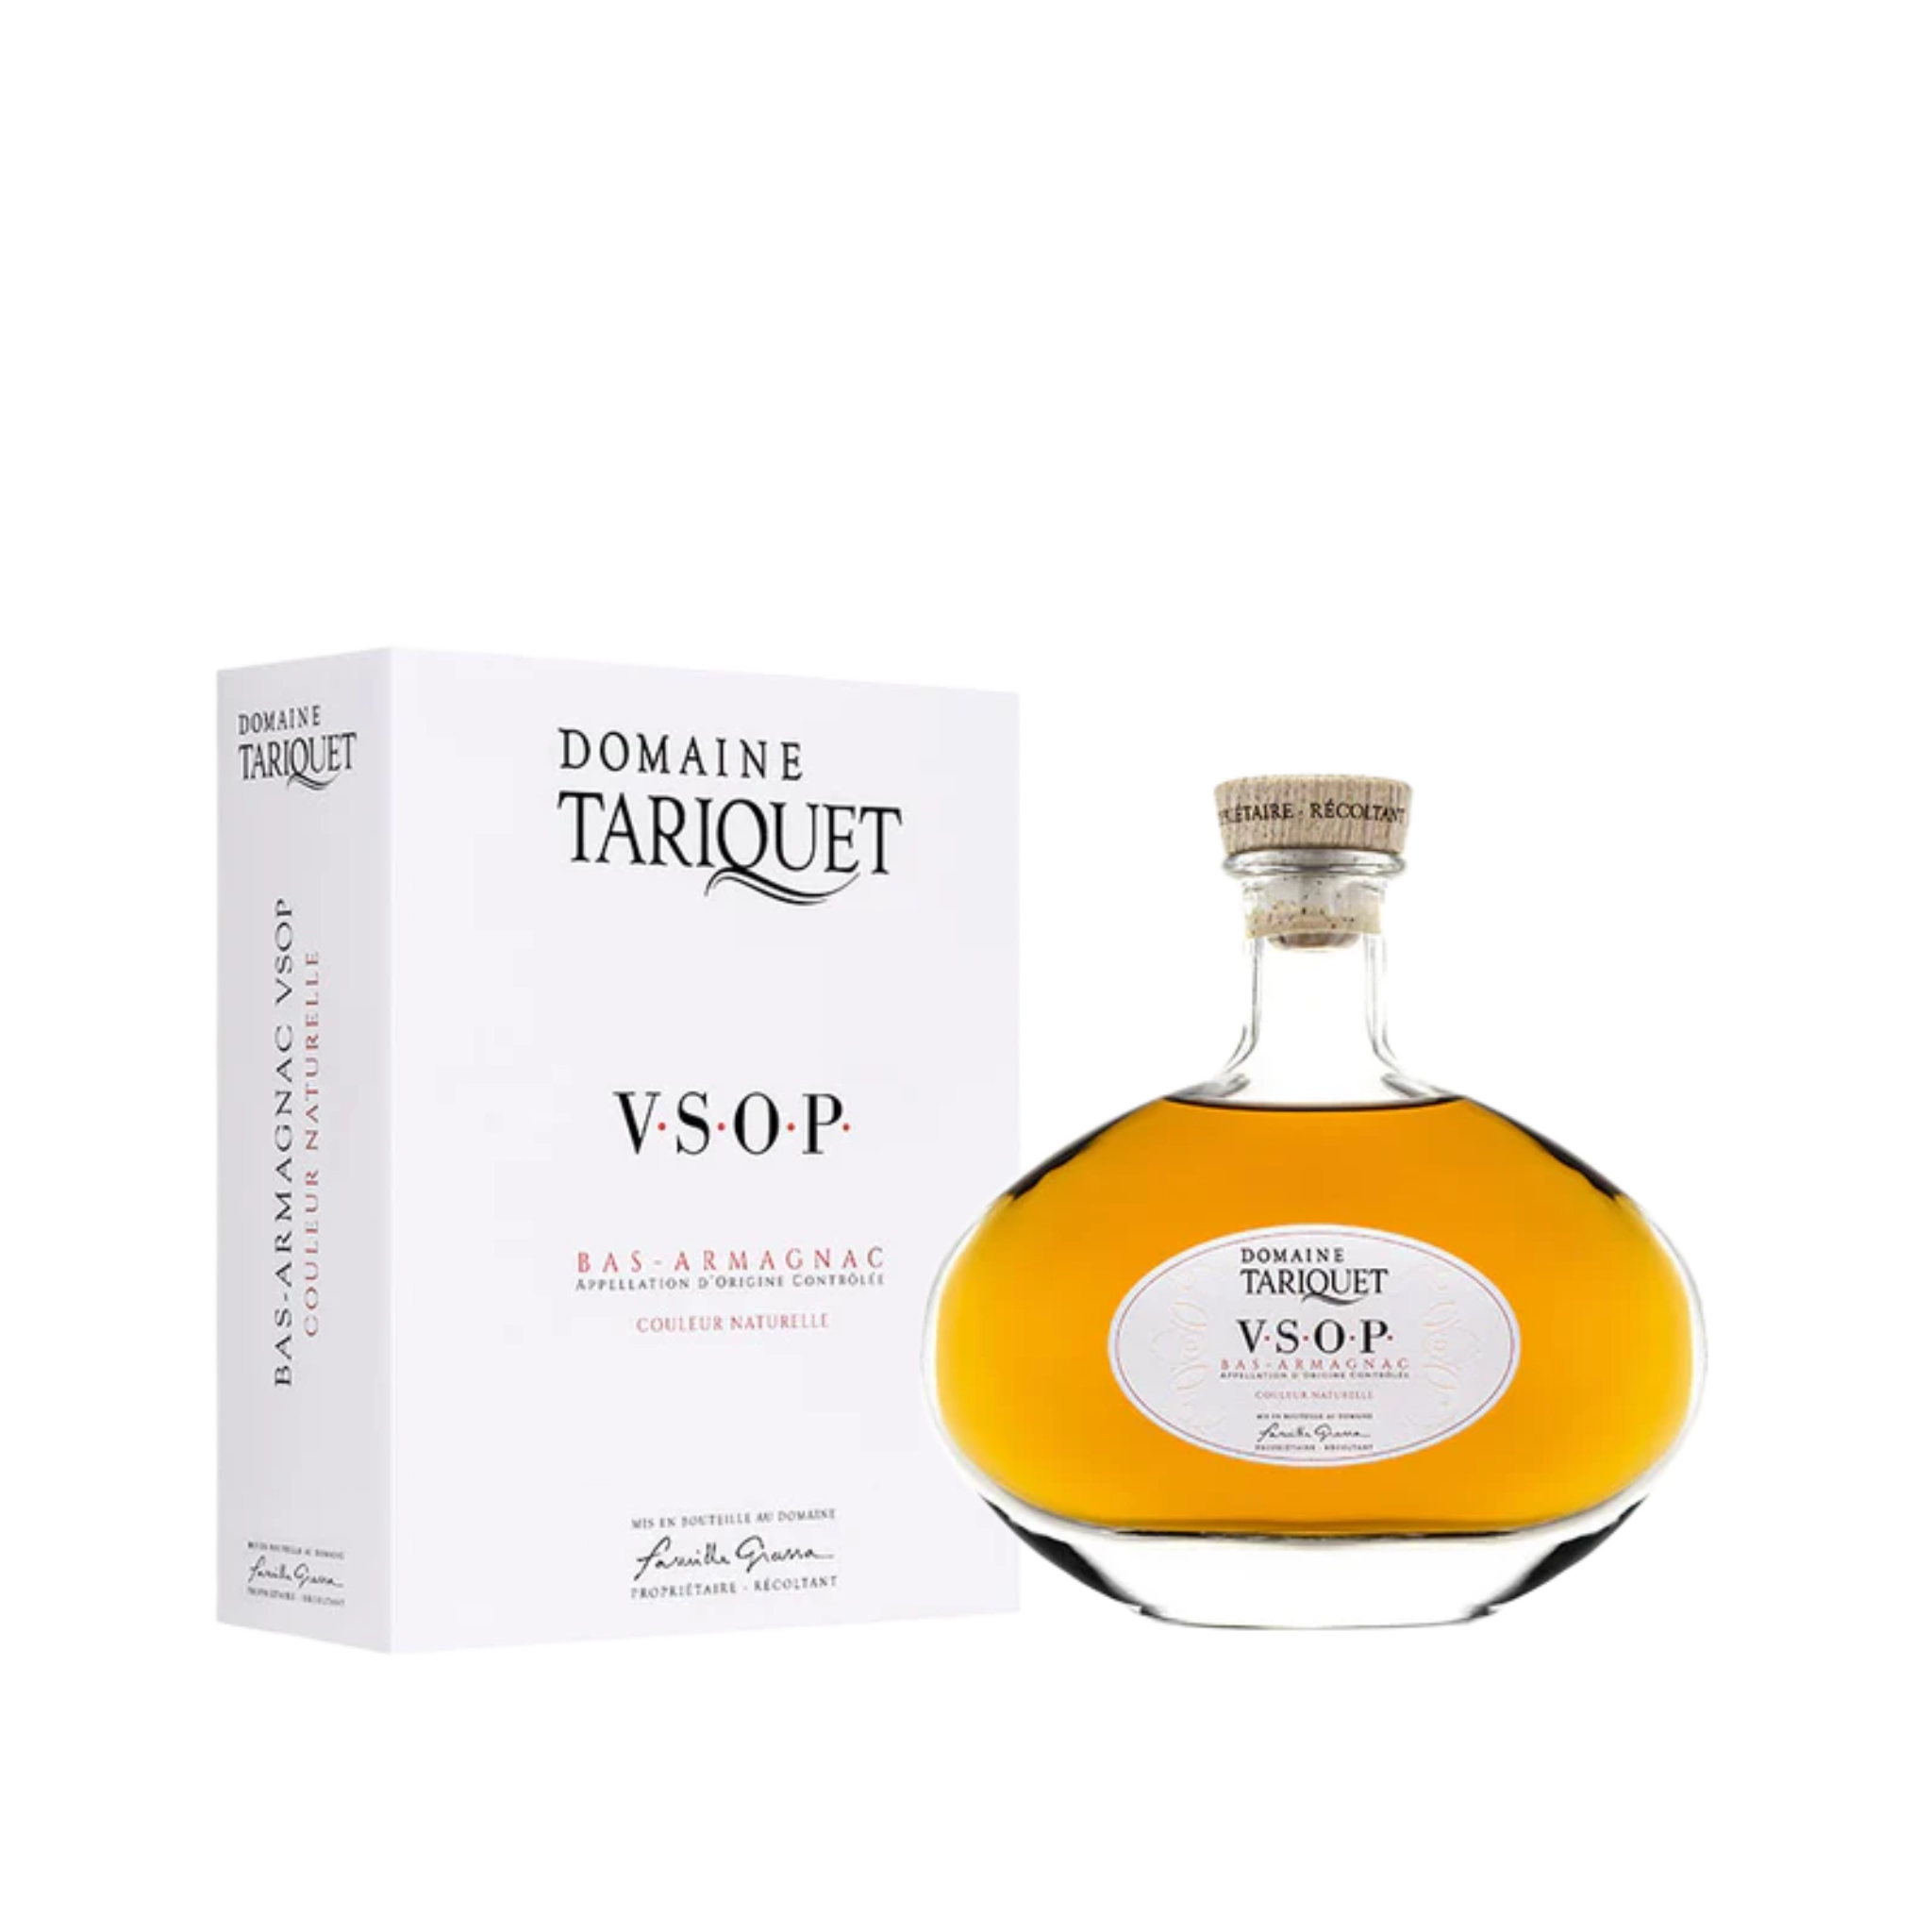 Rượu Brandy Pháp Domaine Tariquet VSOP Classique Bas-Armagnac in Carafe